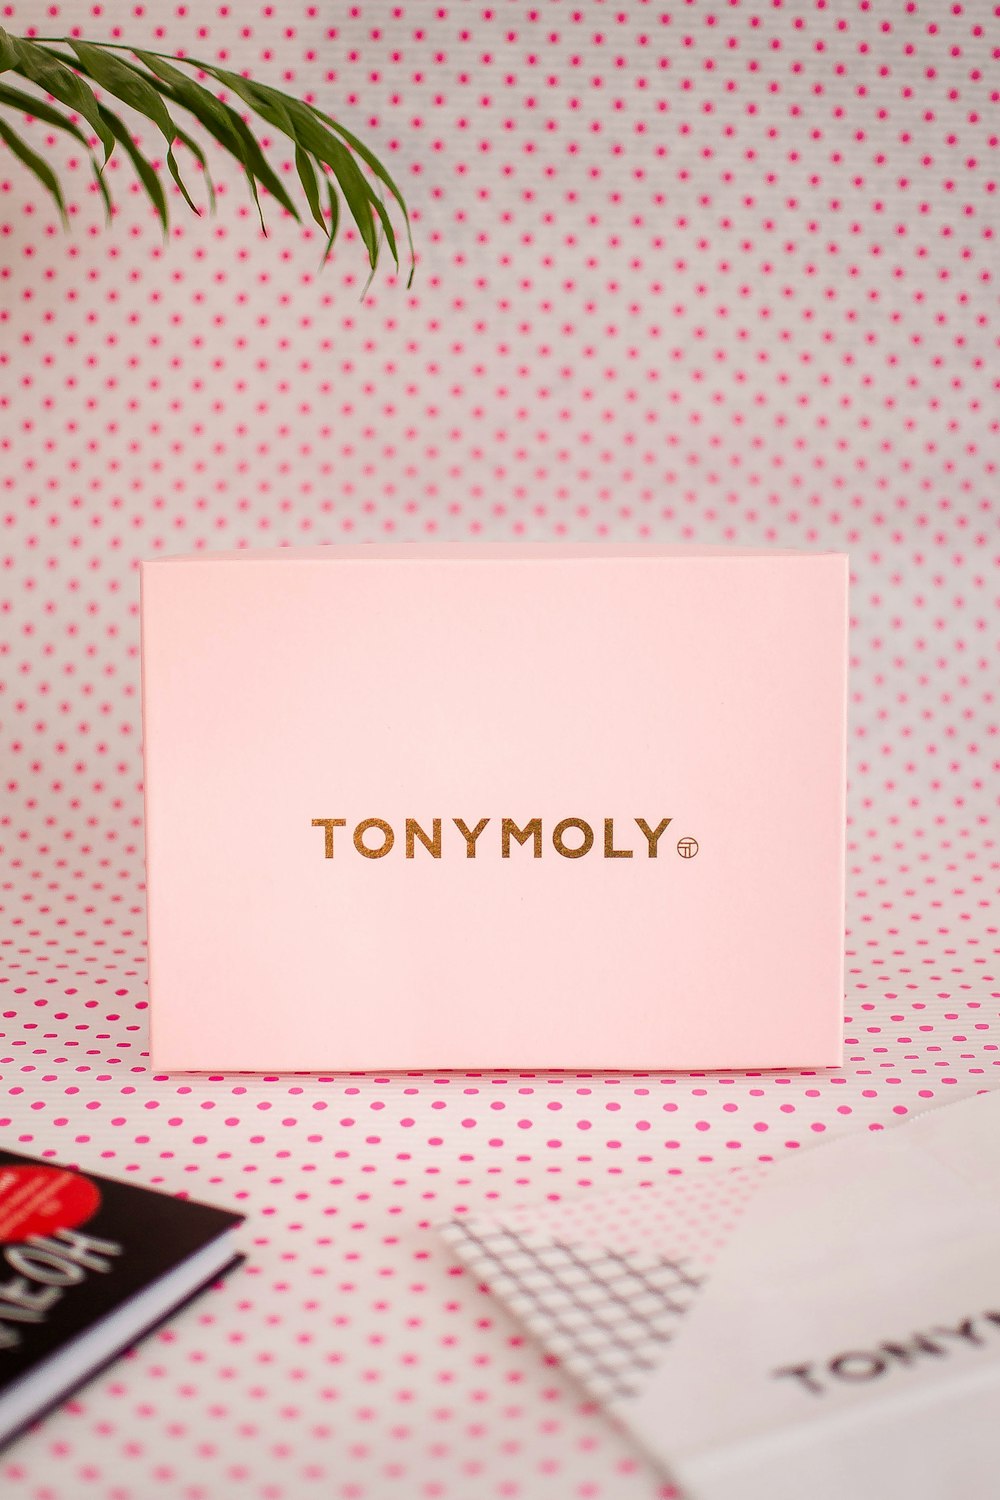 Tony Moly box